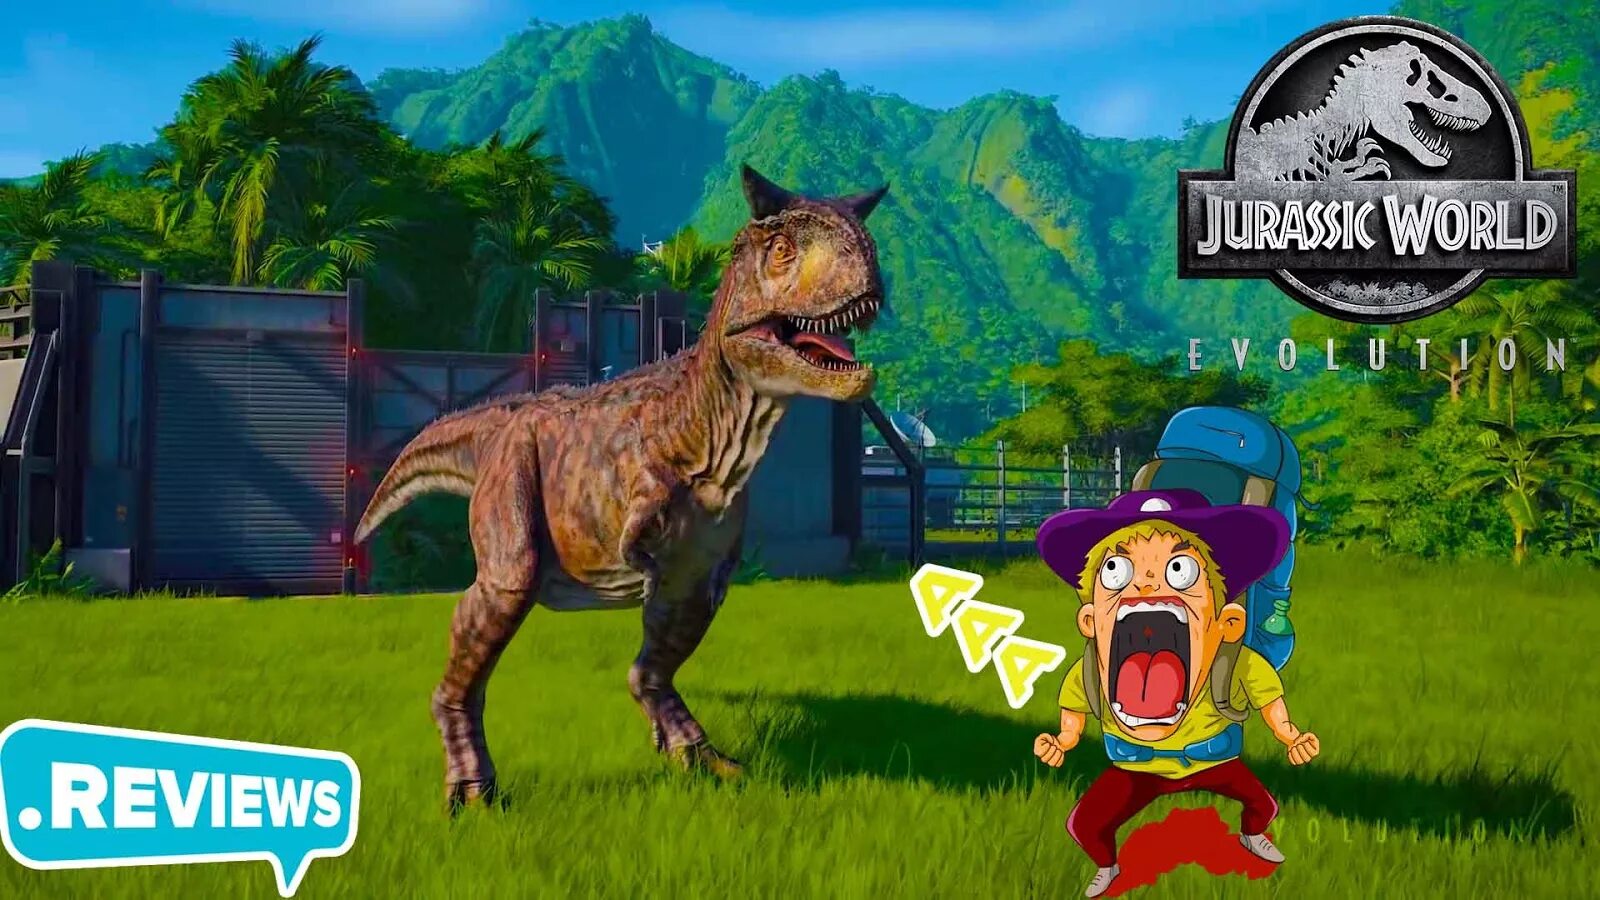 Jurassic world много денег. Джура ворлд Эволюшн. Игра Jurassic World Evolution PC Cover. Как поиграть в Jurassic World game без Брага вылета из игры. Что делать если лагает,вылетает Jurassic World Evolution на ПК.